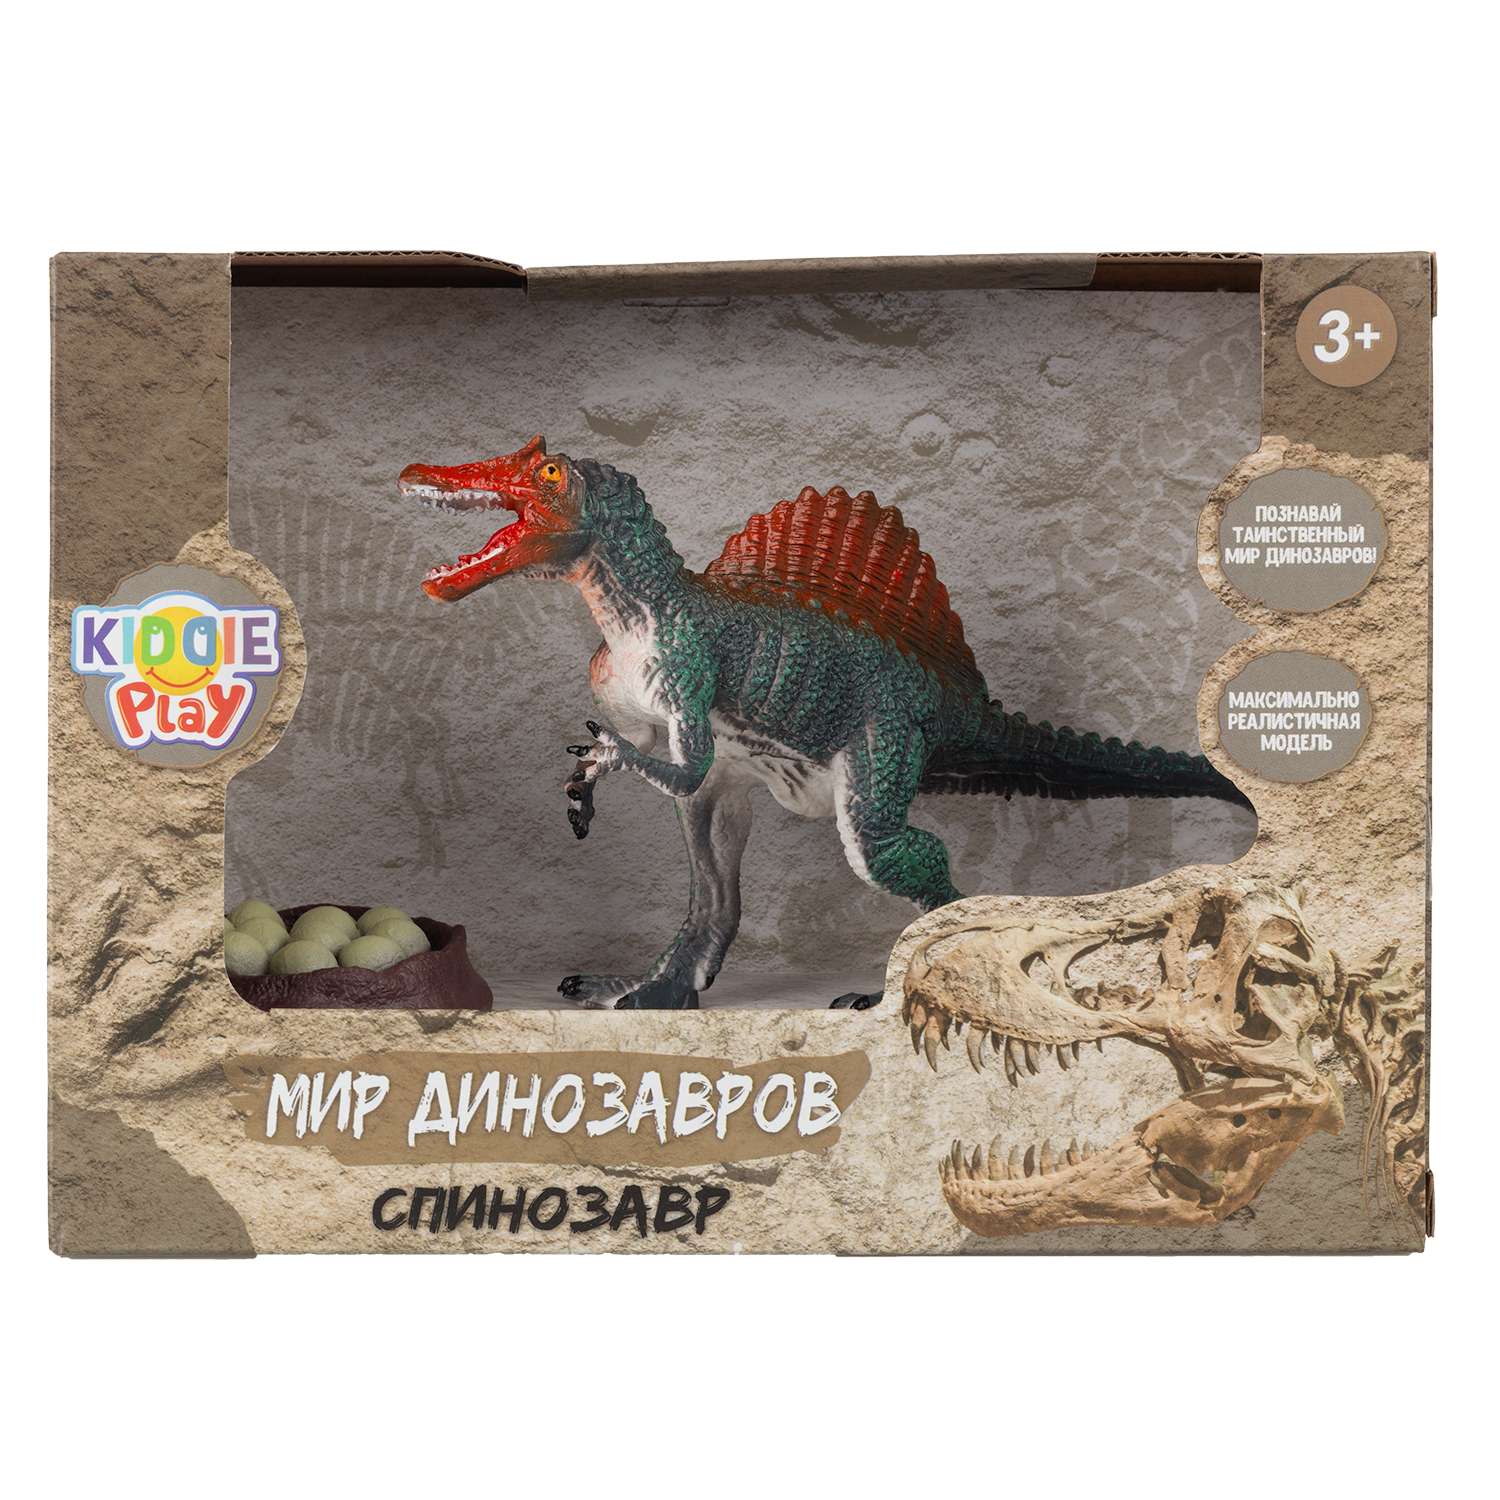 Игрушка KiddiePlay Спинозавр 12607 - фото 2